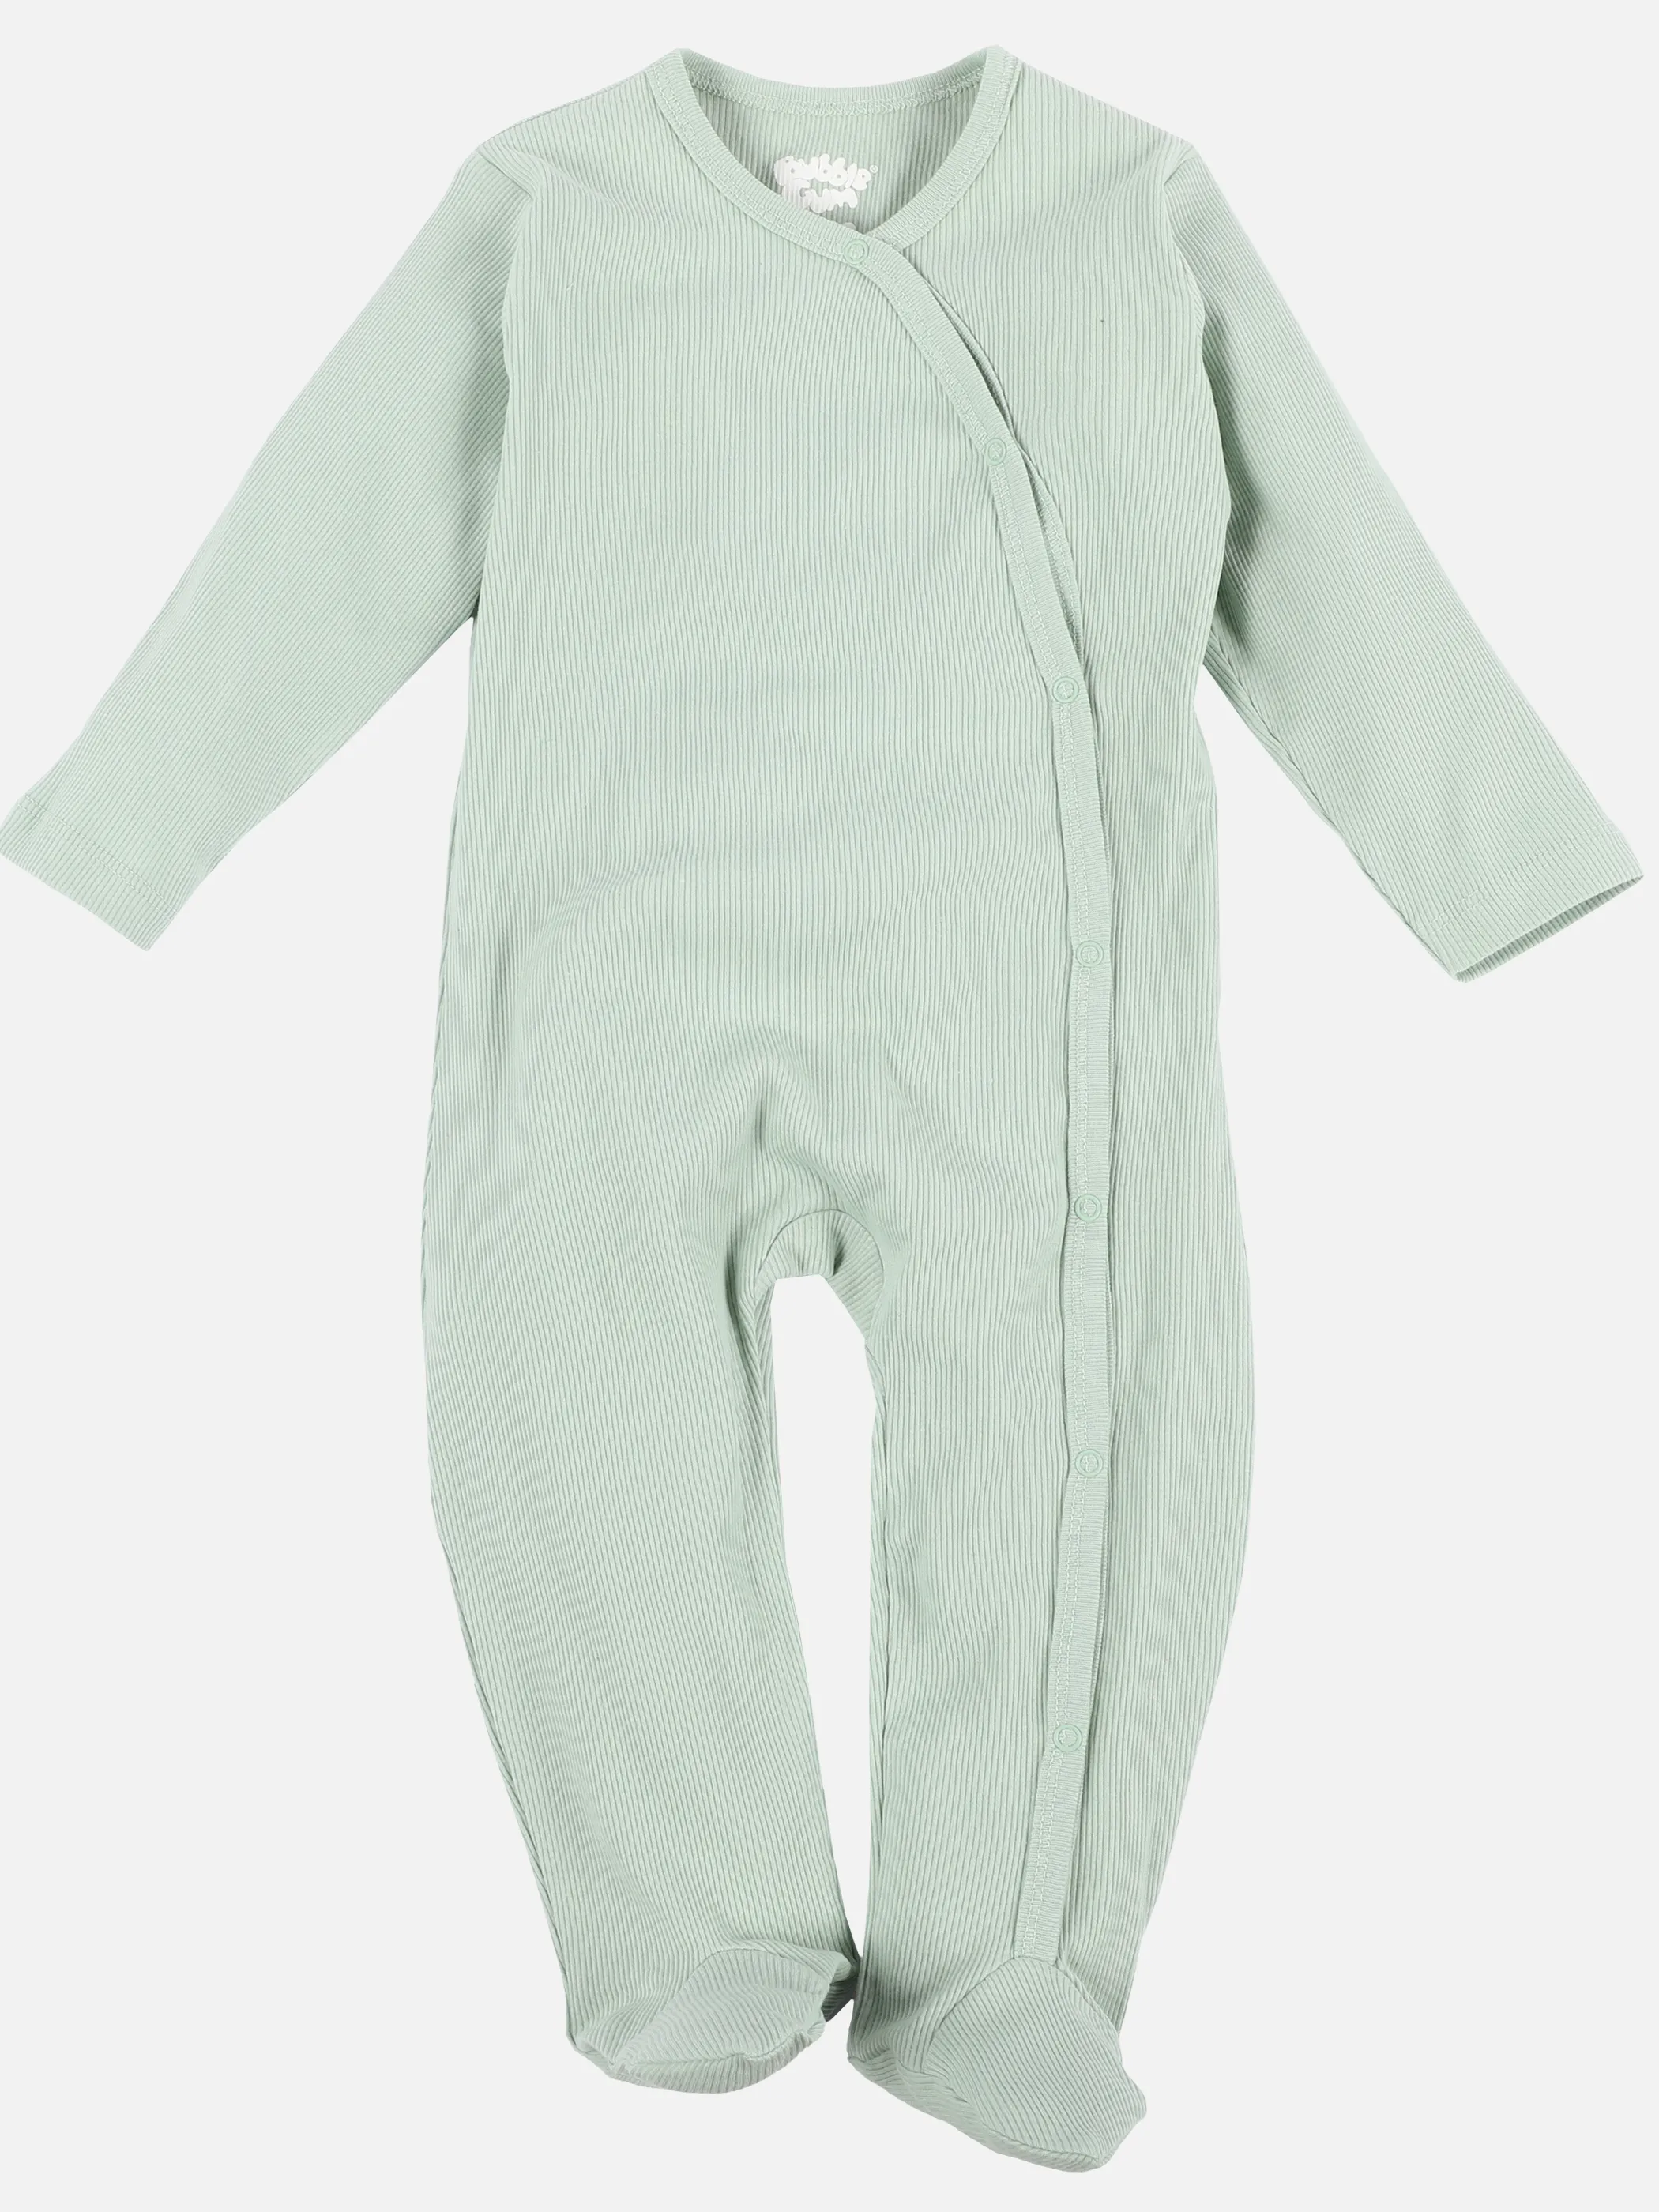 Bubble Gum BU langarm Pyjama mit Fuß 1tlg. in grün Grün 890873 GRÜN 1